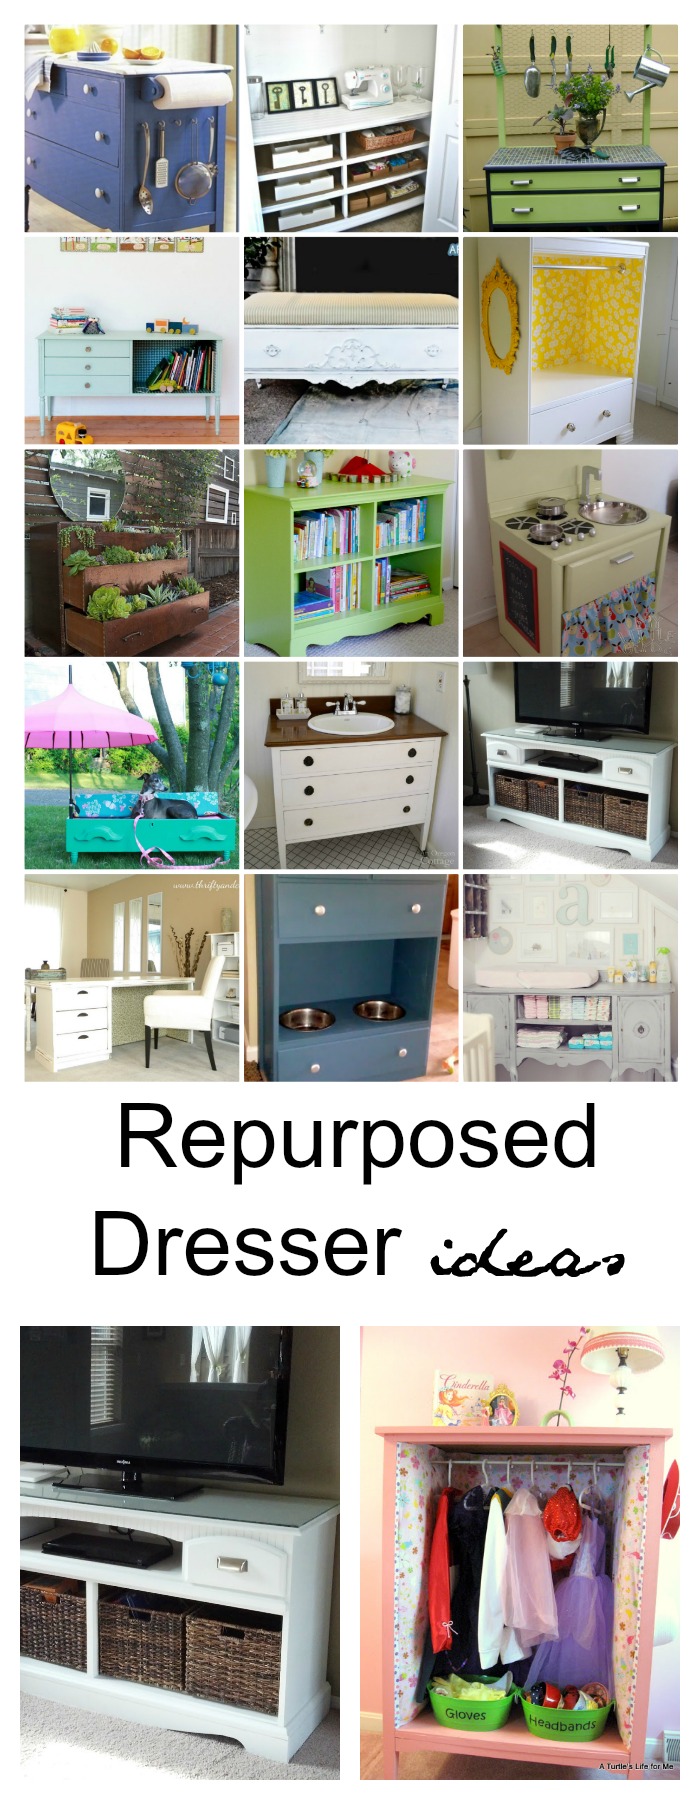 Repurposed Dresser Ideas The Idea Room